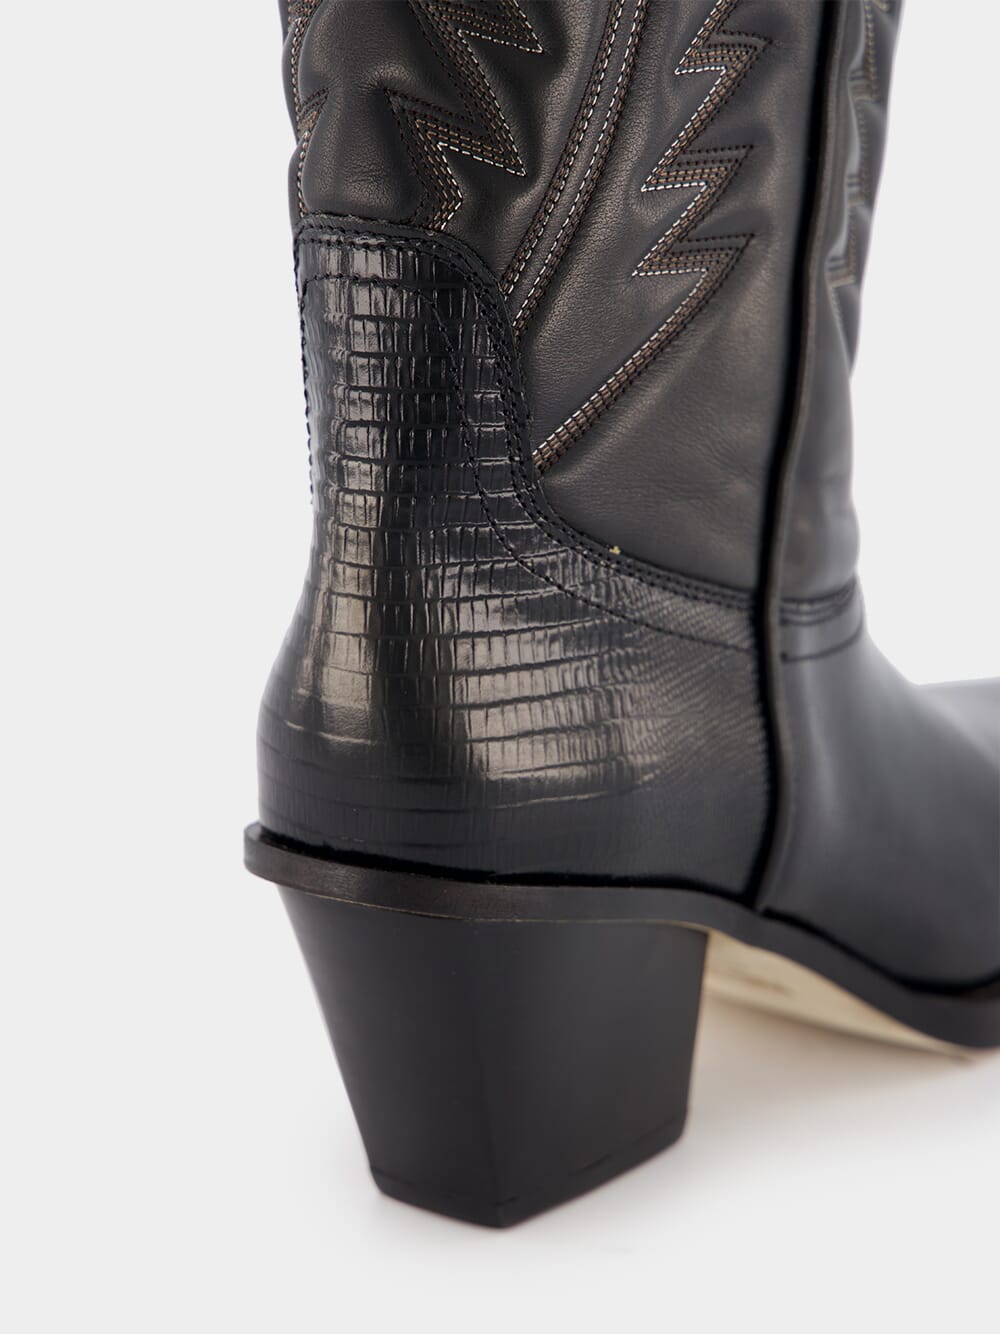 Paris TexasRosario Nappa Leather Cowboy Boots at Fashion Clinic